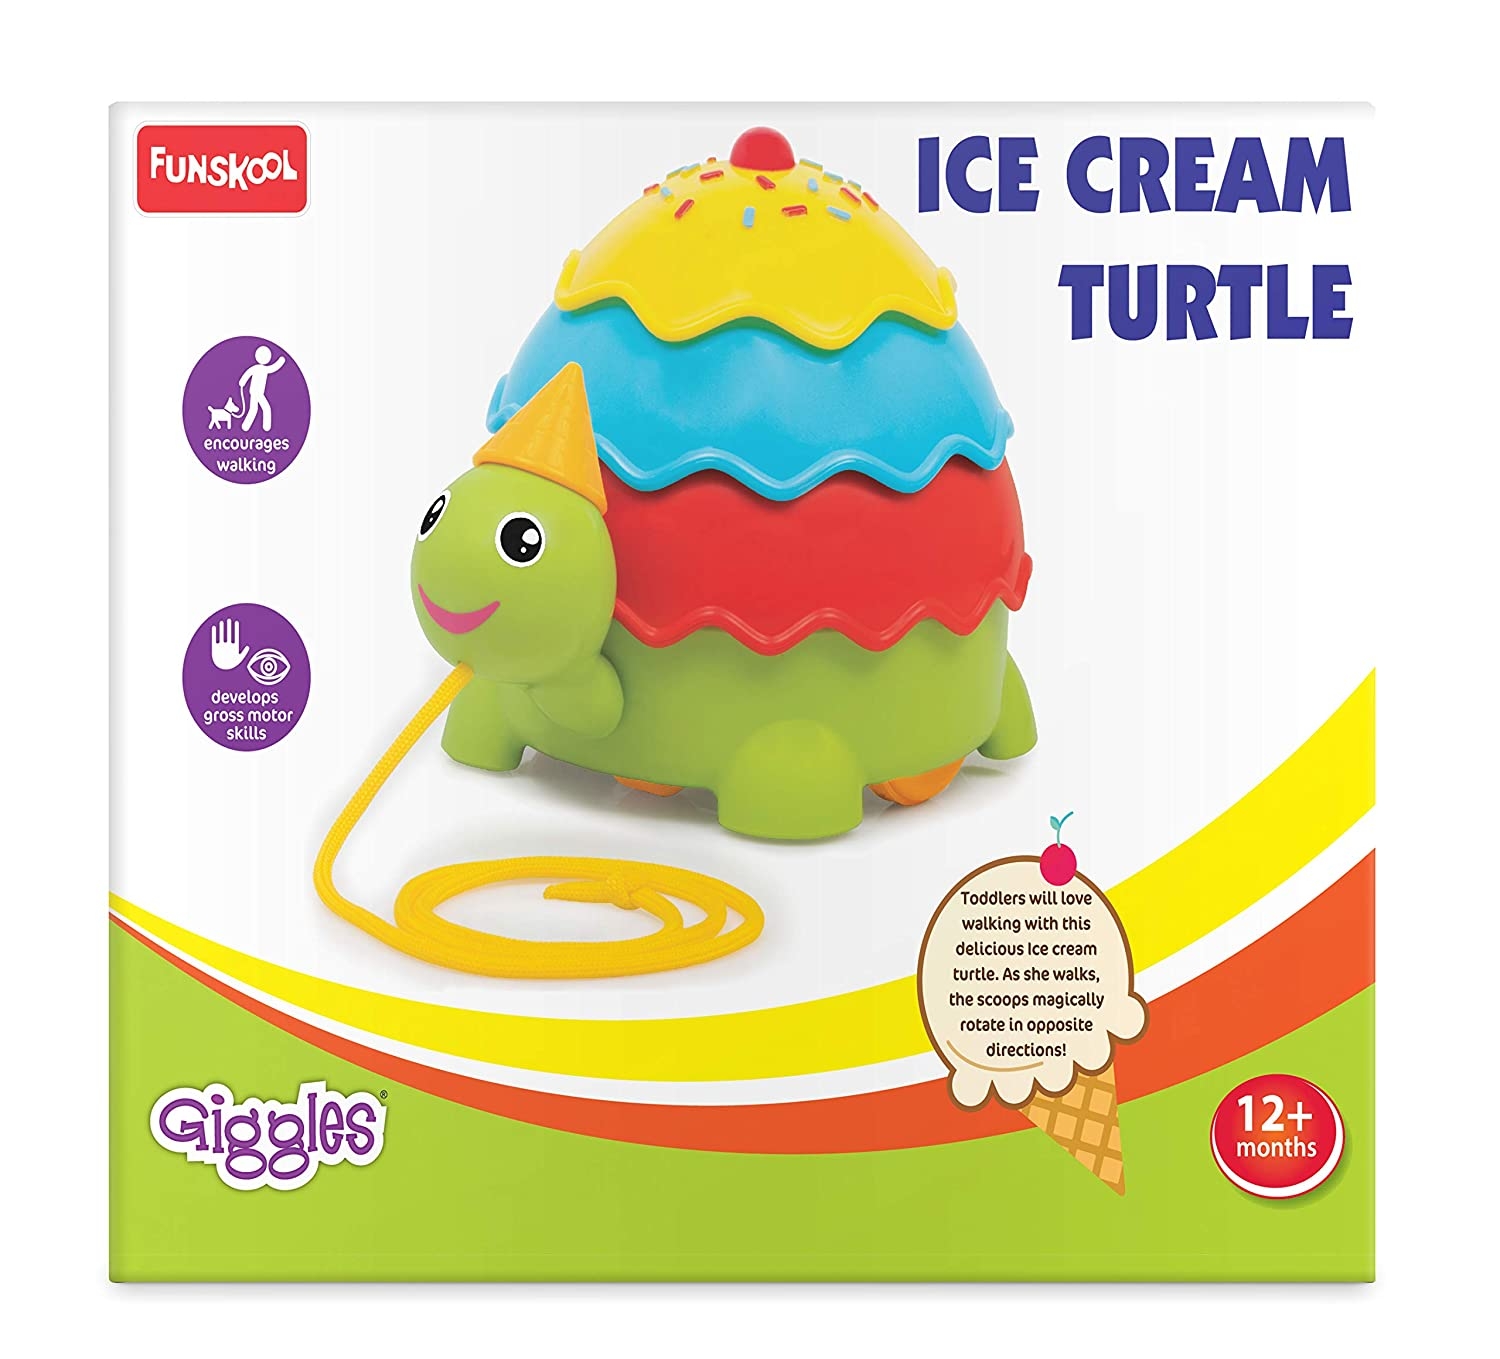 Funskool | Ice Cream Turtle undefined